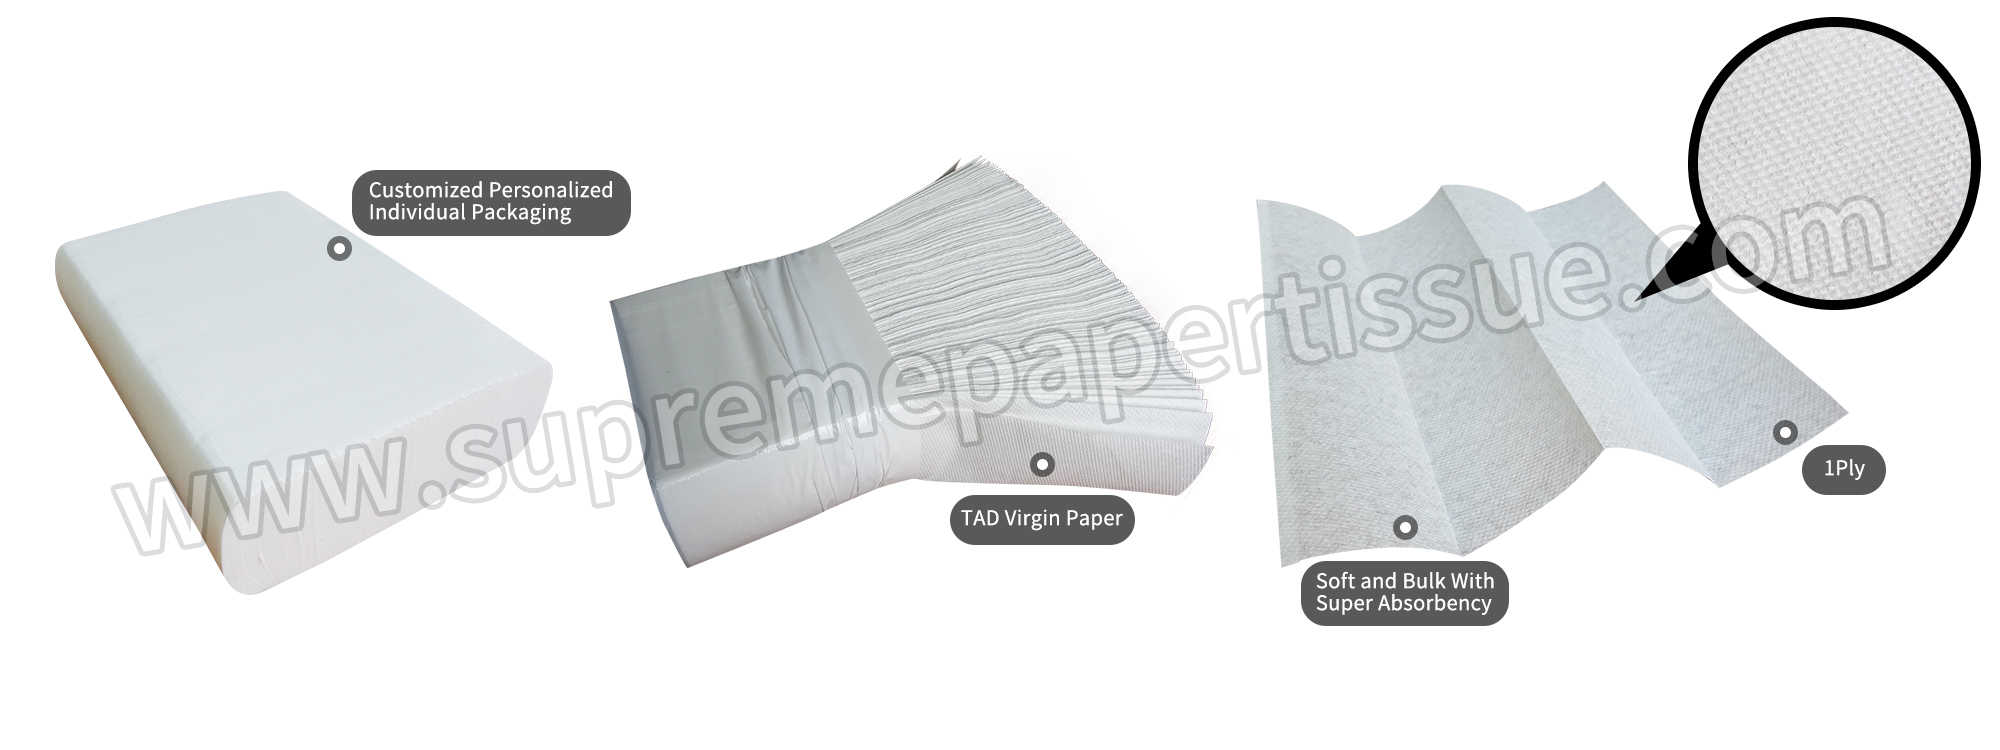 Ultraslim Paper Hand Towel TAD Virgin Paper - Paper Hand Towel - 1